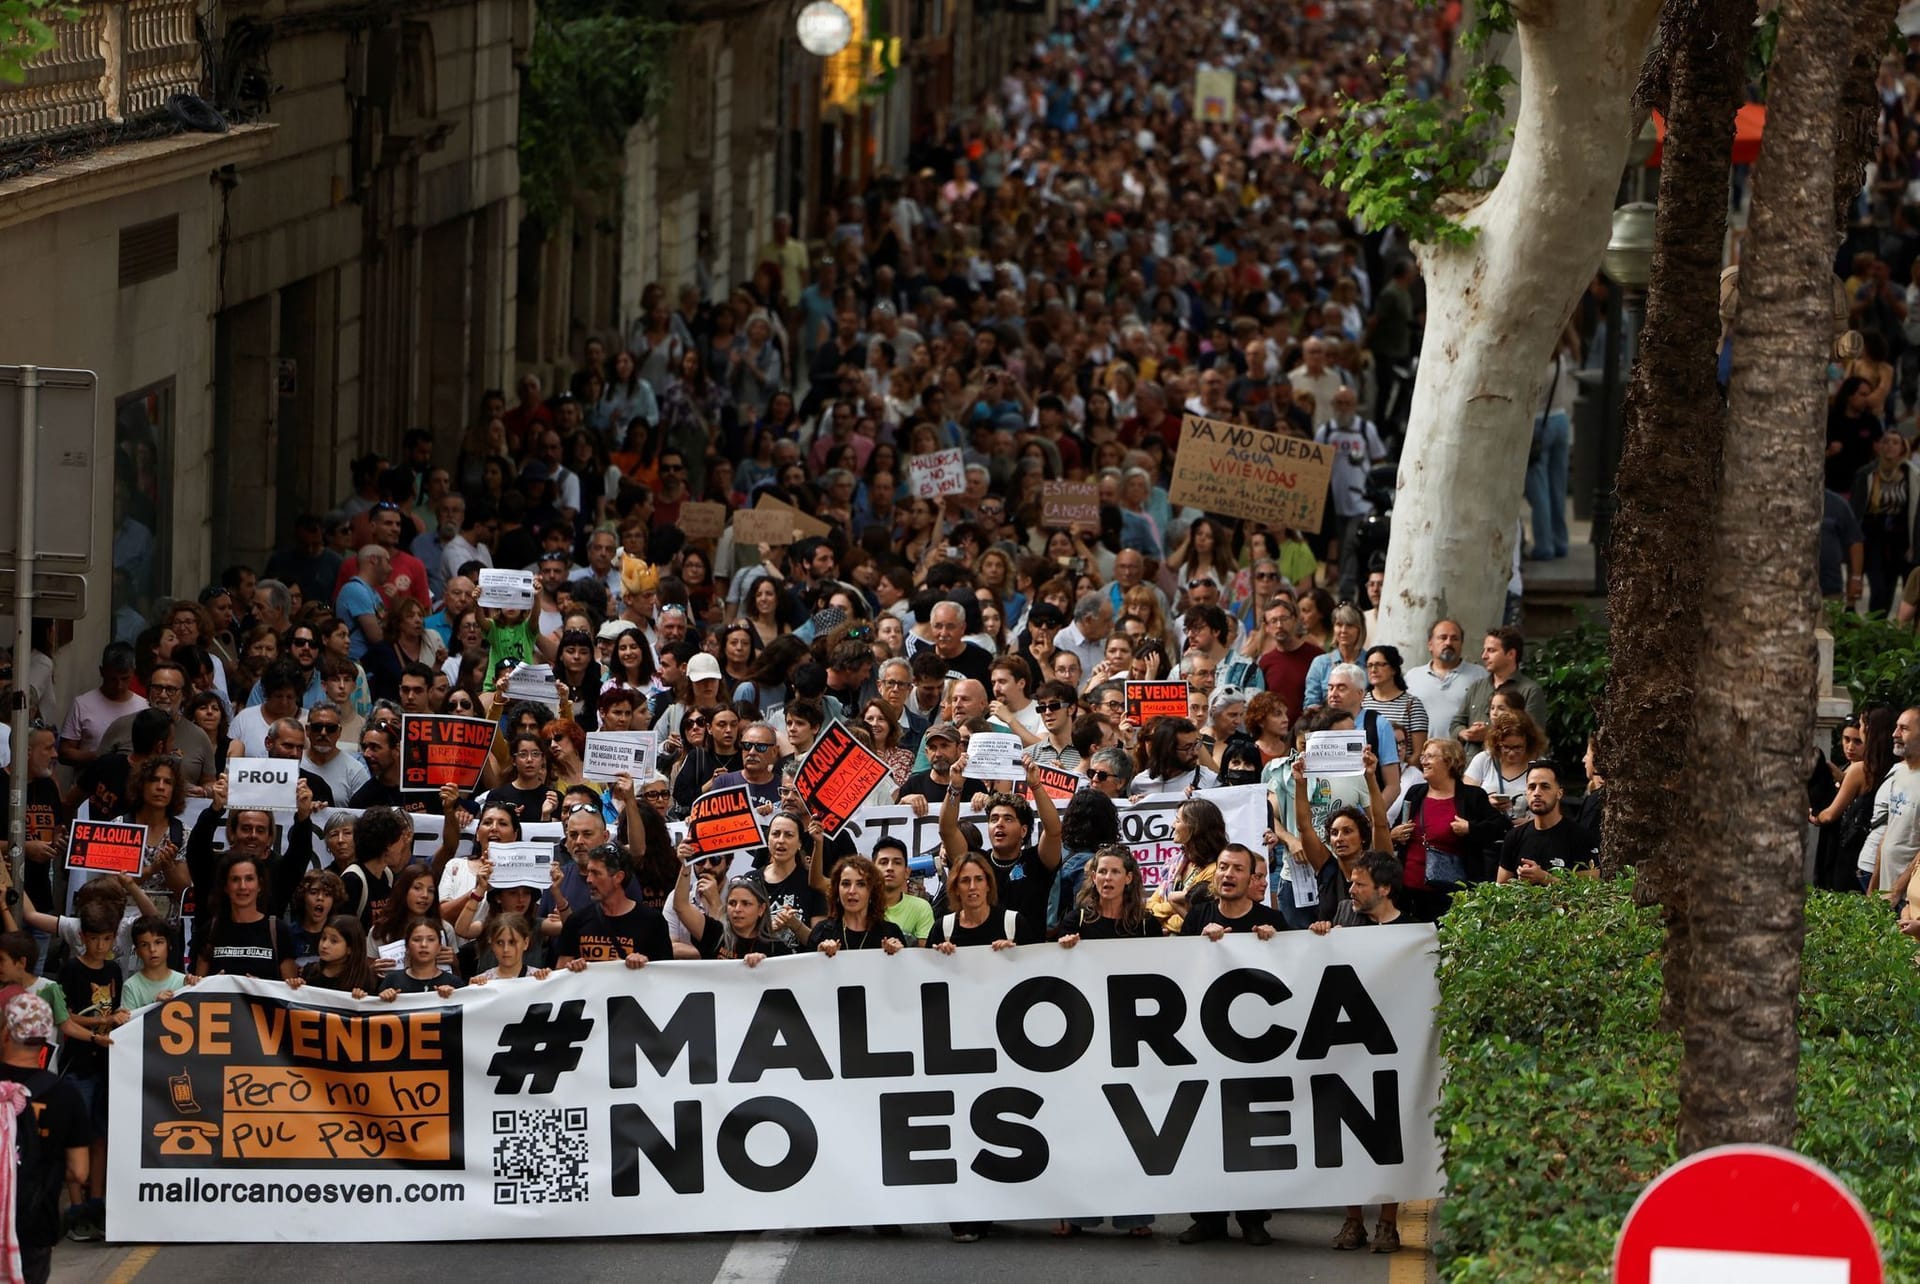 "Mallorca ist nicht zu verkaufen": Demonstranten in Palma.